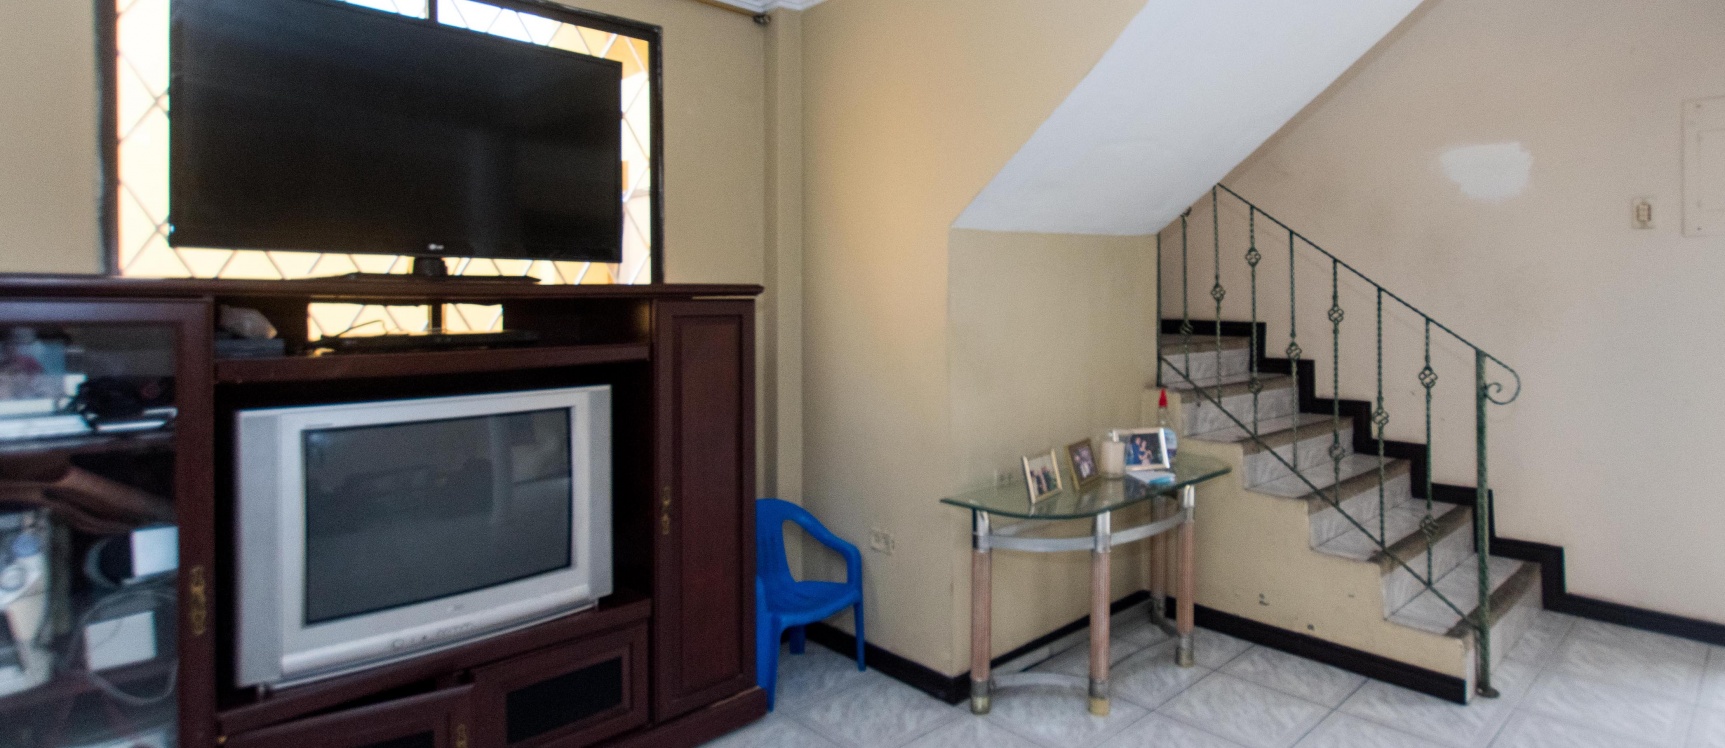 GeoBienes - Casa en venta ubicada en la Alborada, Norte de Guayaquil - Plusvalia Guayaquil Casas de venta y alquiler Inmobiliaria Ecuador